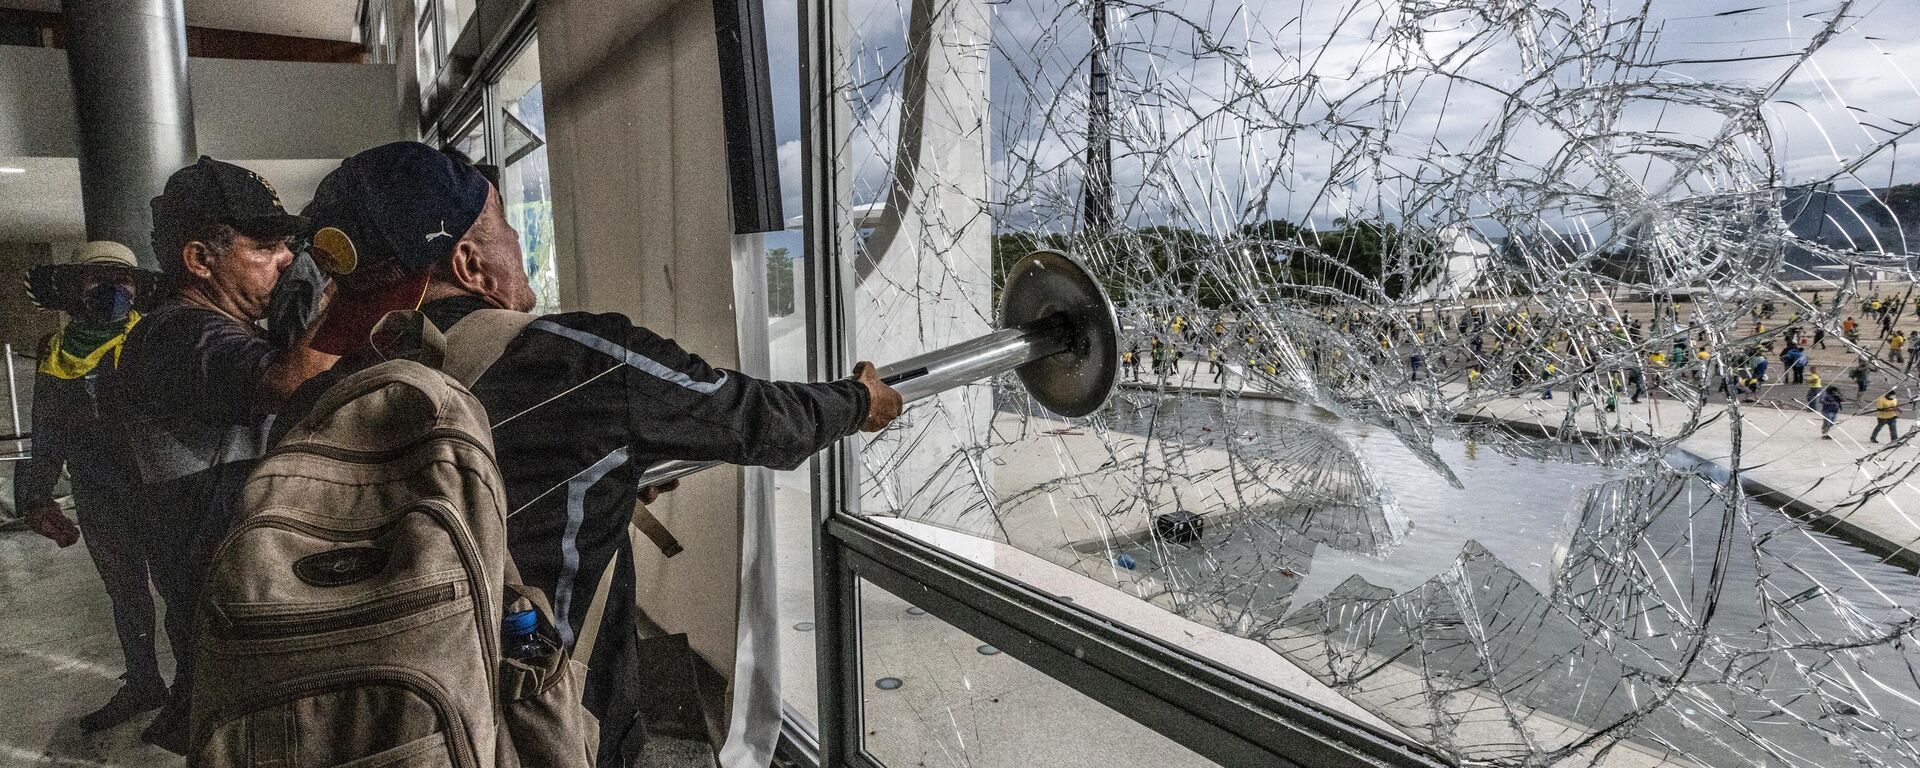 Homem quebra janela do Palácio do Planalto durante manifestação em Brasília (DF), em 8 de janeiro de 2023 (foto de arquivo) - Sputnik Brasil, 1920, 11.01.2023